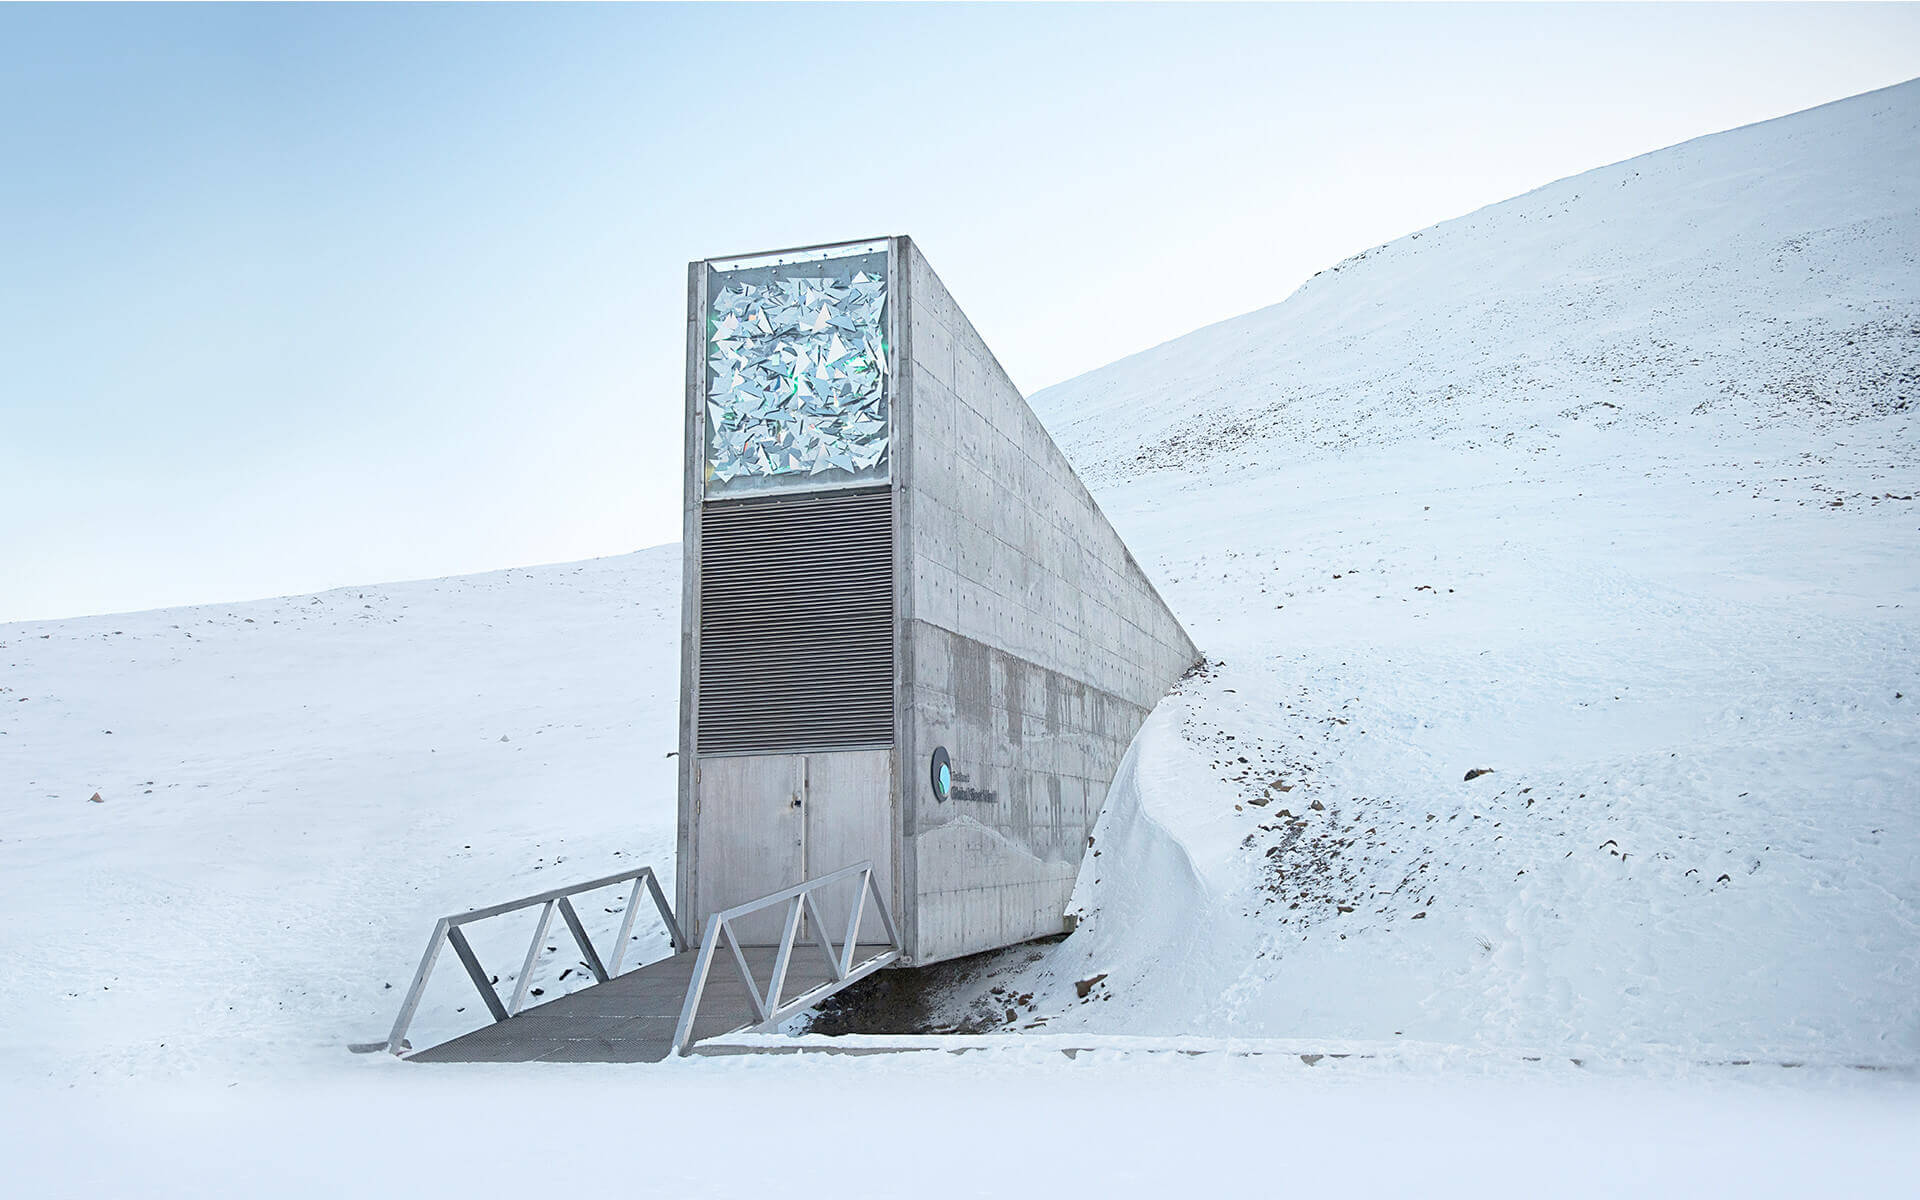 Svalbard Global Seed Vault - Longyearbyen, Norway